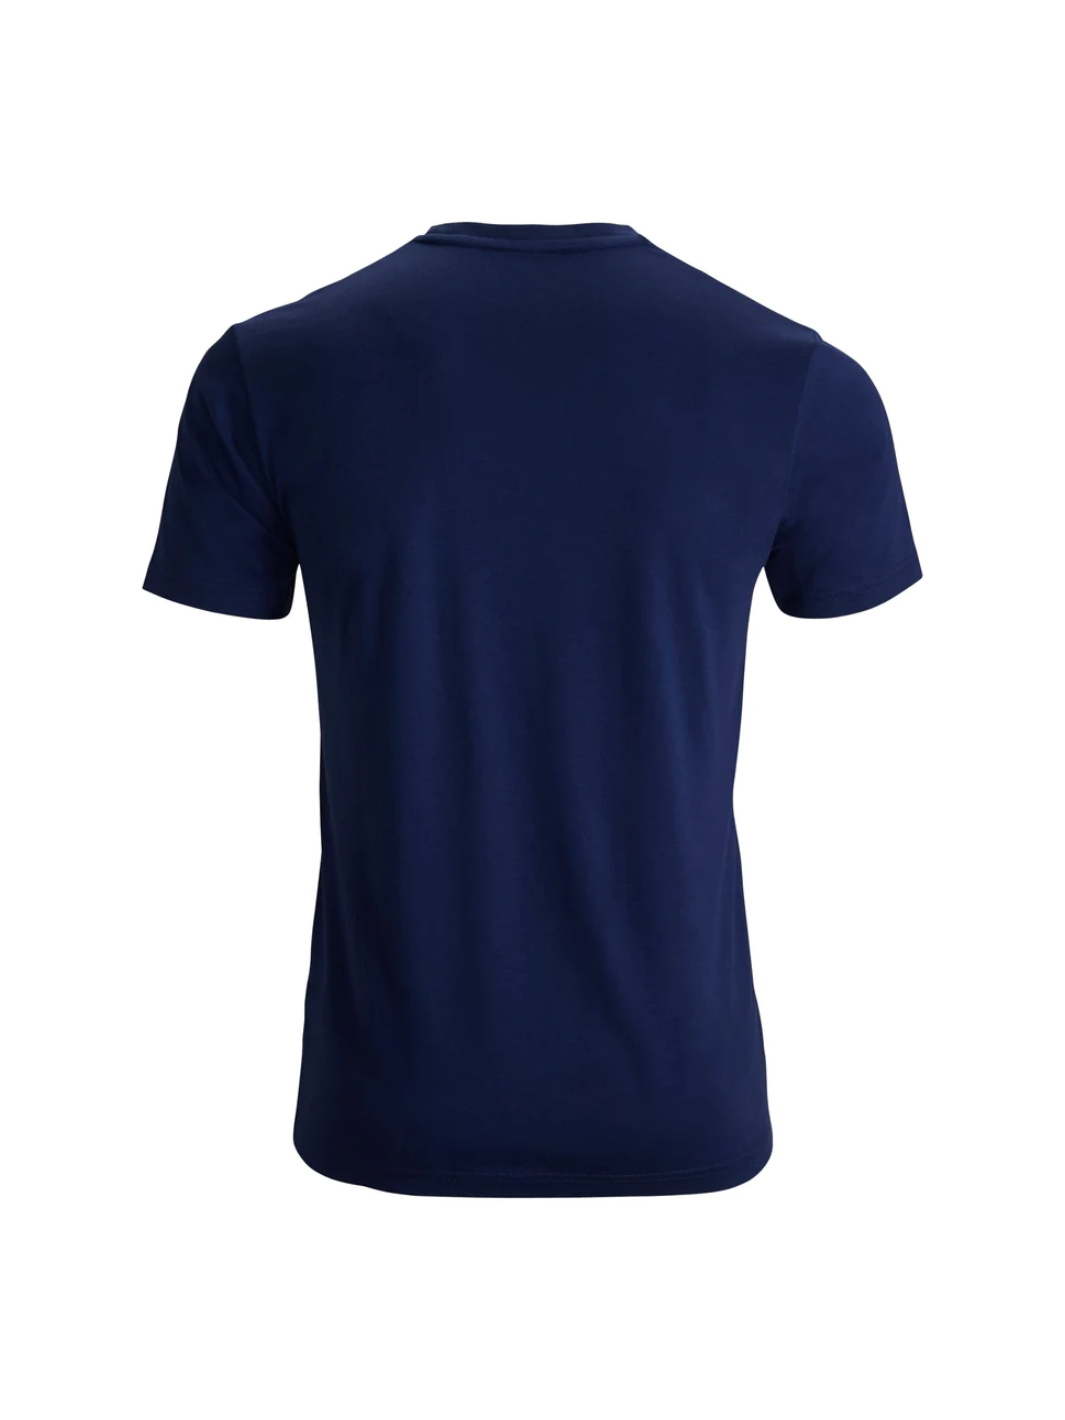 Simon T-Shirt